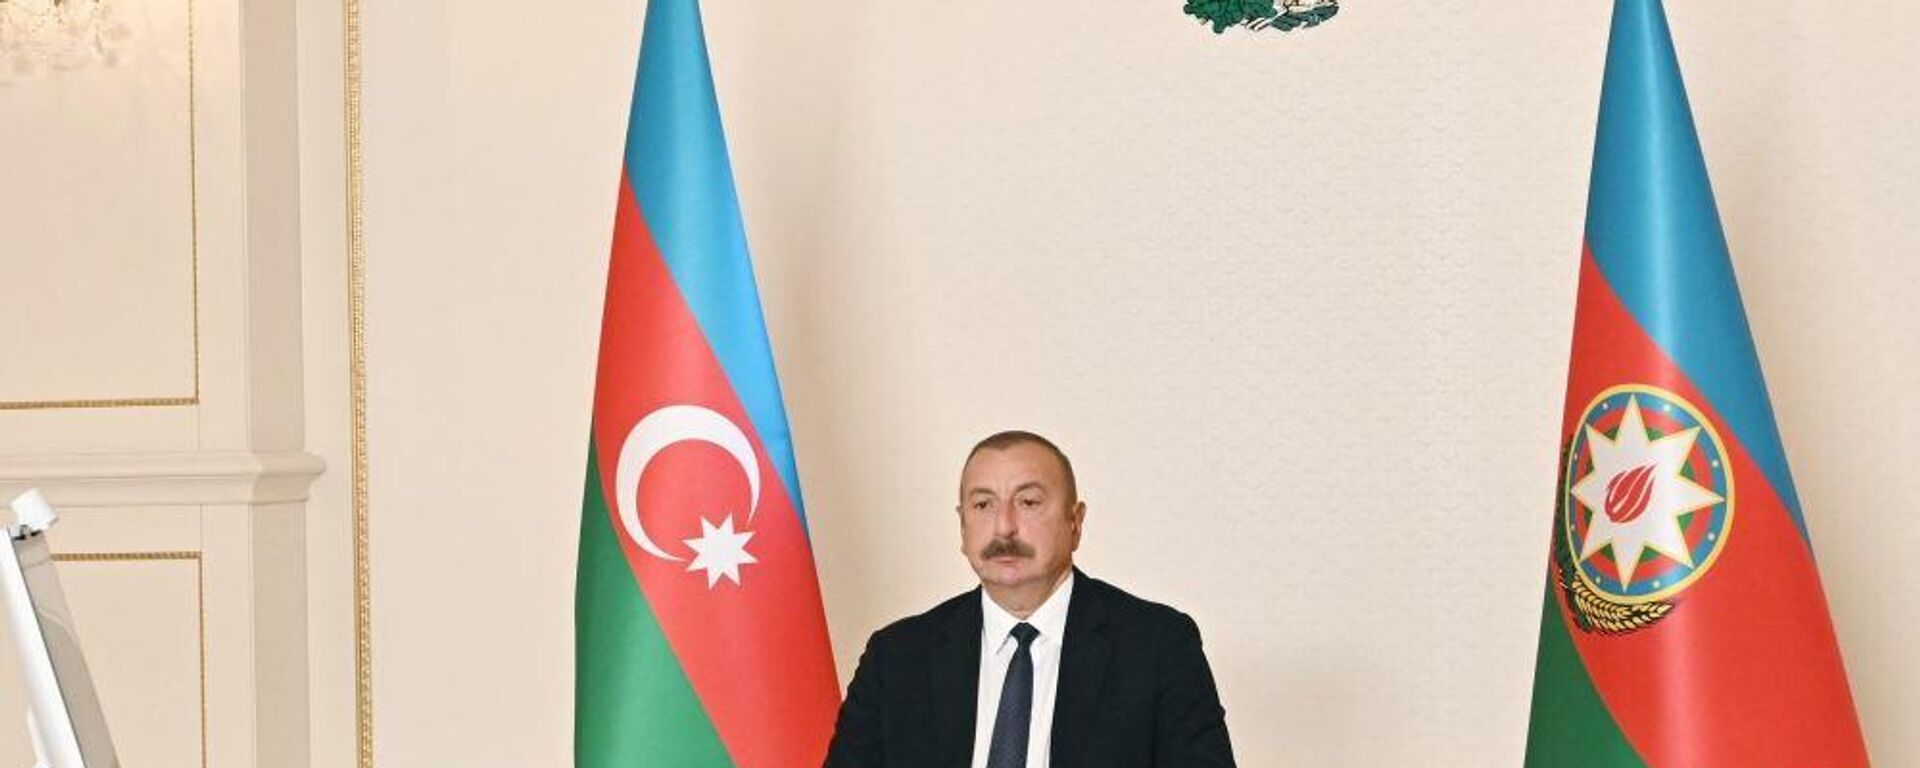 Президент Азербайджана Ильхам Алиев дал интервью испанскому информационному агентству EFE - Sputnik Азербайджан, 1920, 02.10.2021